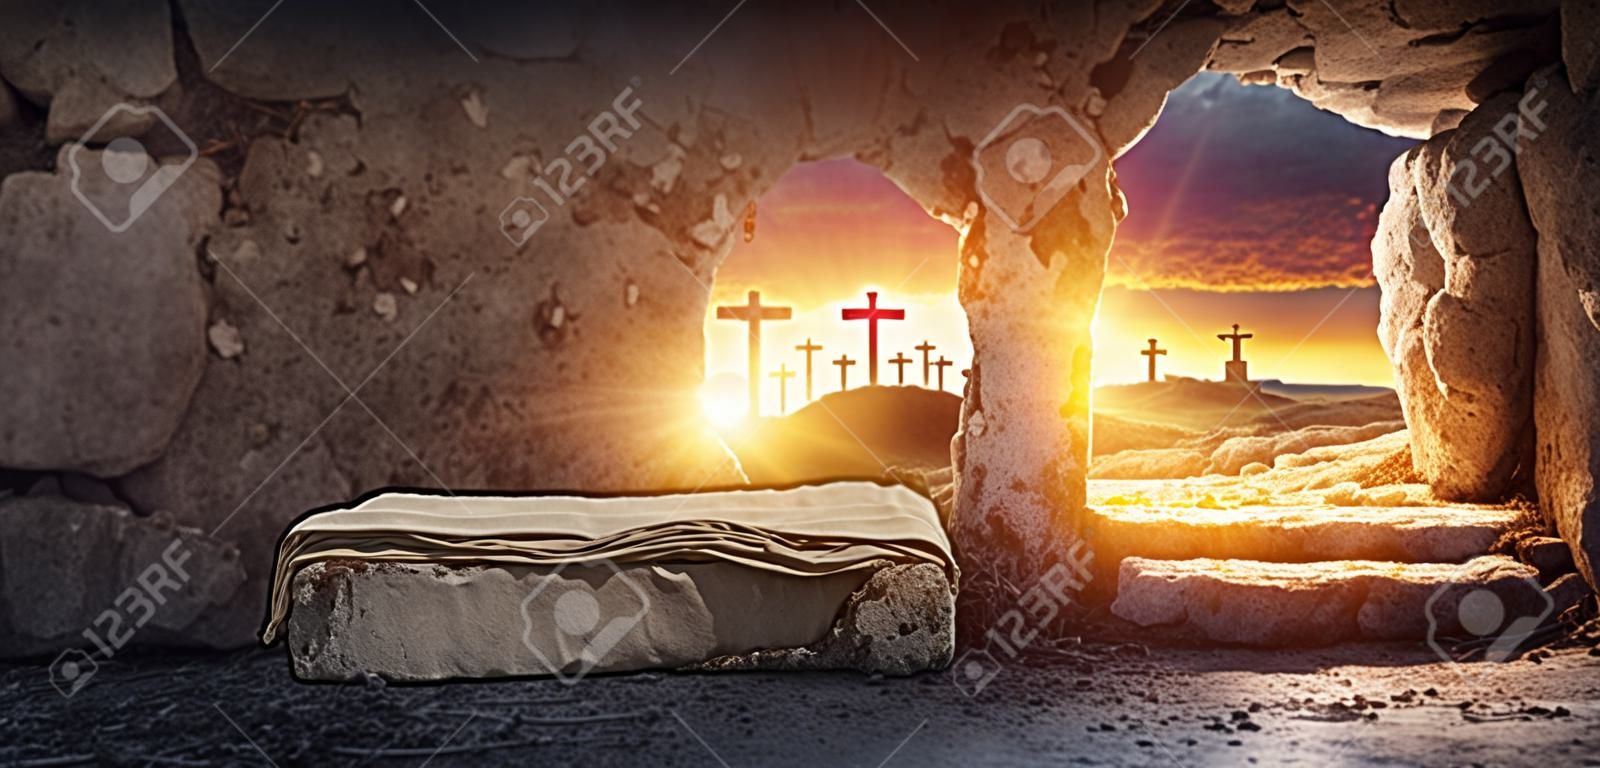 예수 그리스도의 일출 부활에 수의와 십자가에 못 박힌 빈 무덤